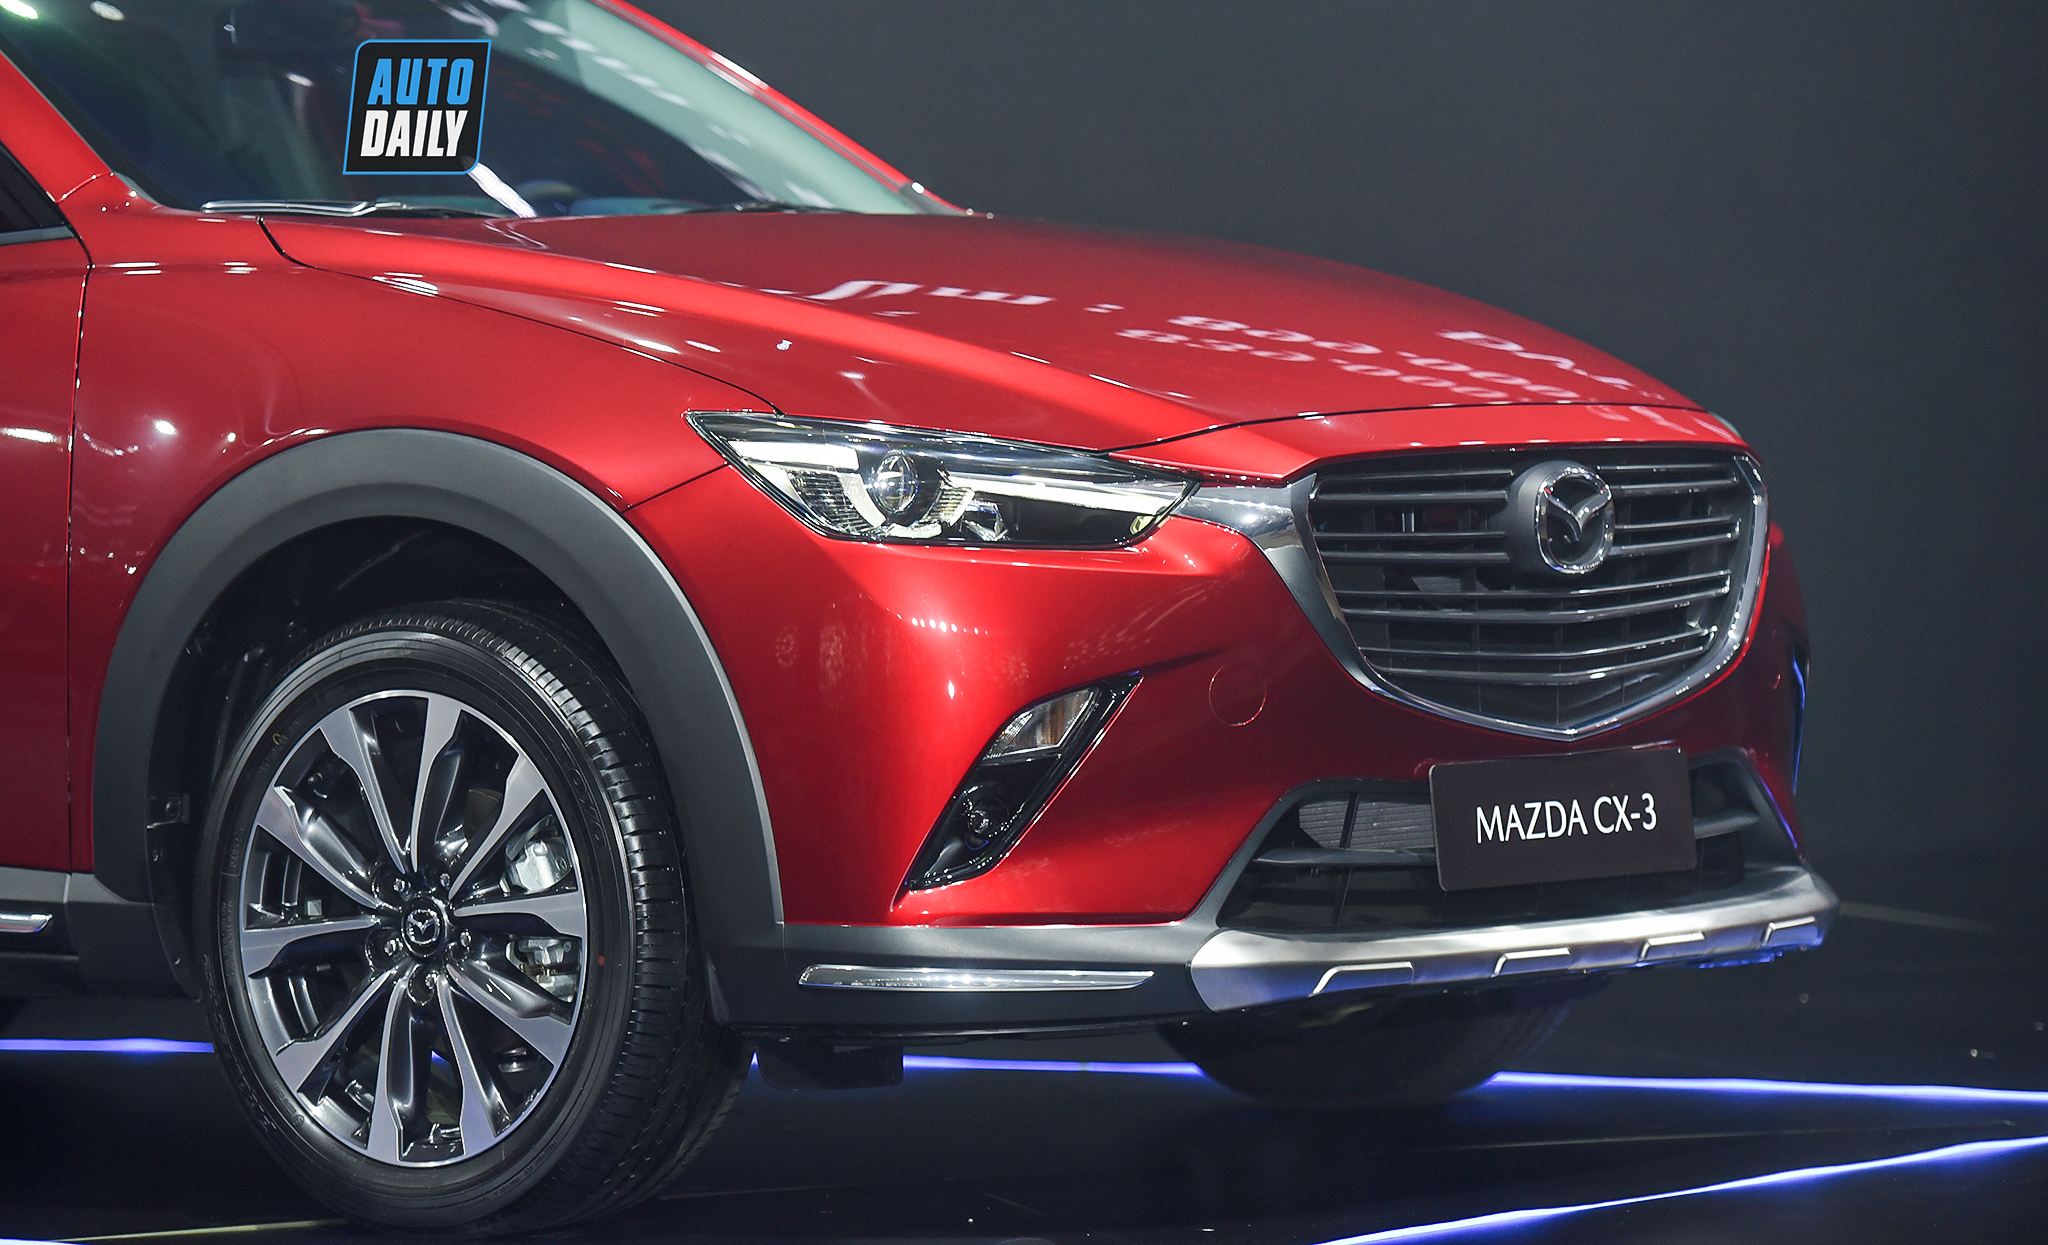 Chi tiết giá lăn bánh của Mazda CX-3 2021 tại Việt Nam Mazda CX-3 2021 ra mắt tại Việt Nam giá từ 629 triệu mazda-cx33.jpg